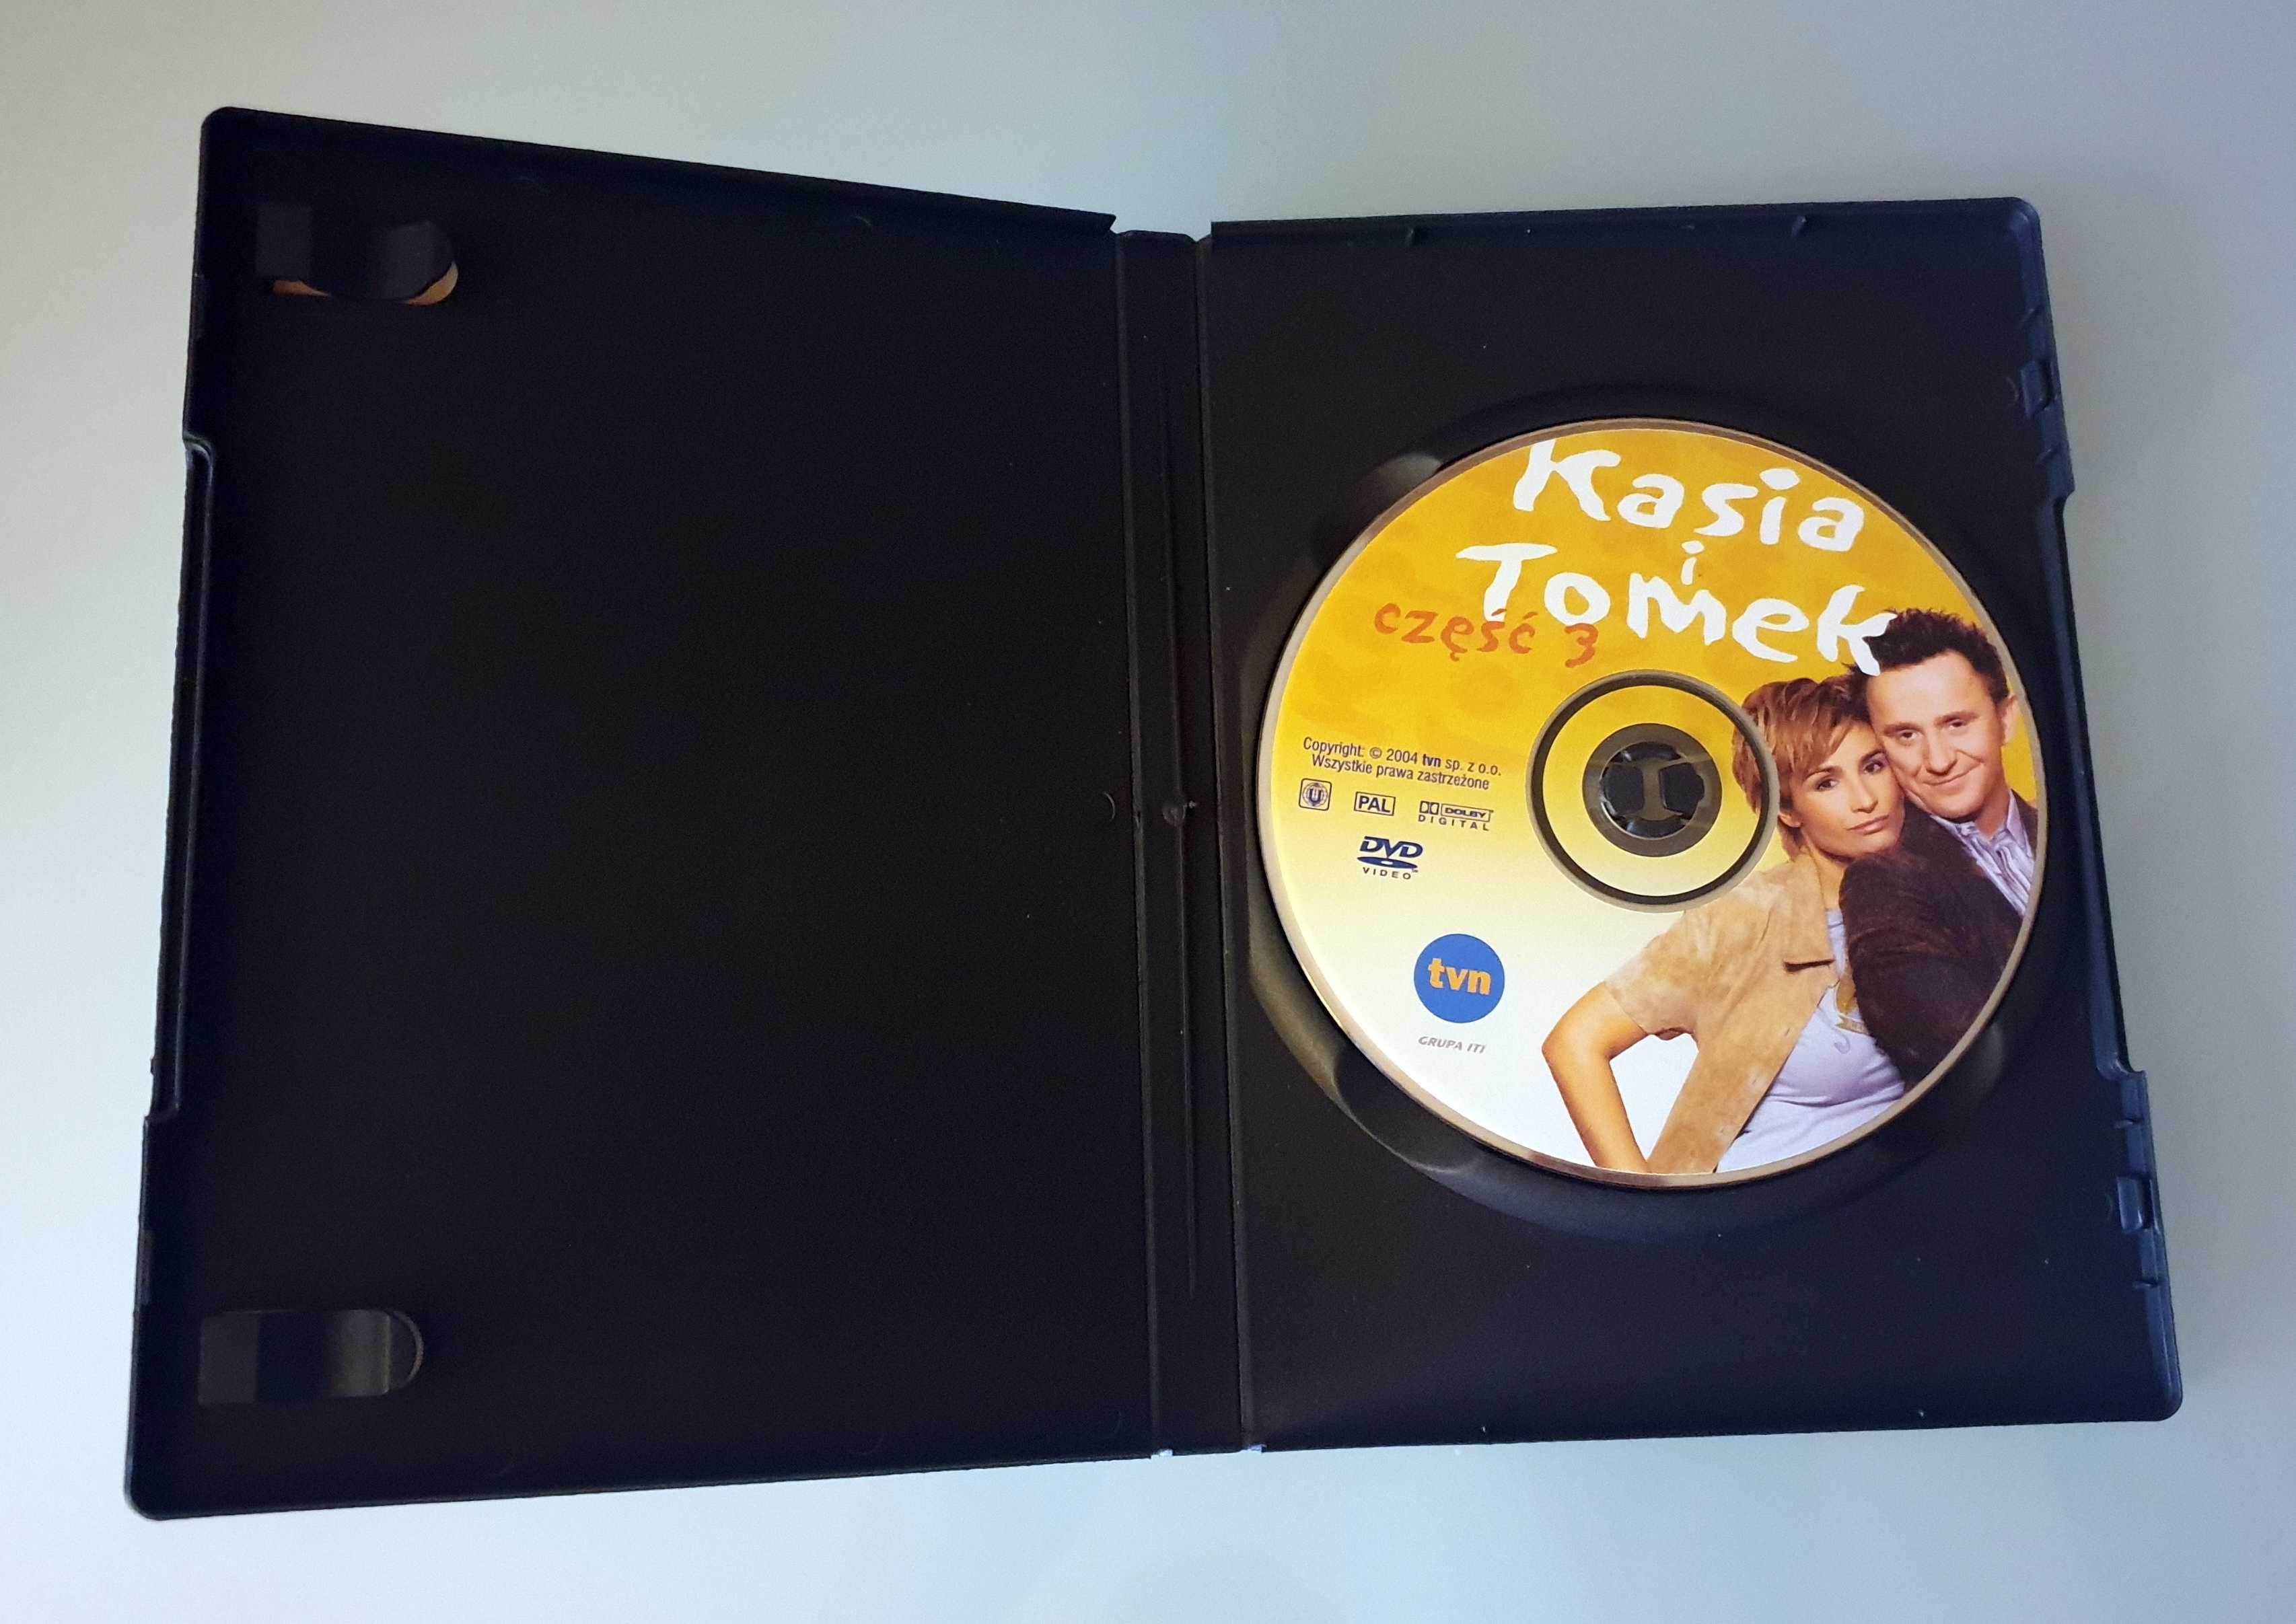 Płyta DVD / serial "Kasia i Tomek" część 3 (Brodzik, Wilczak)